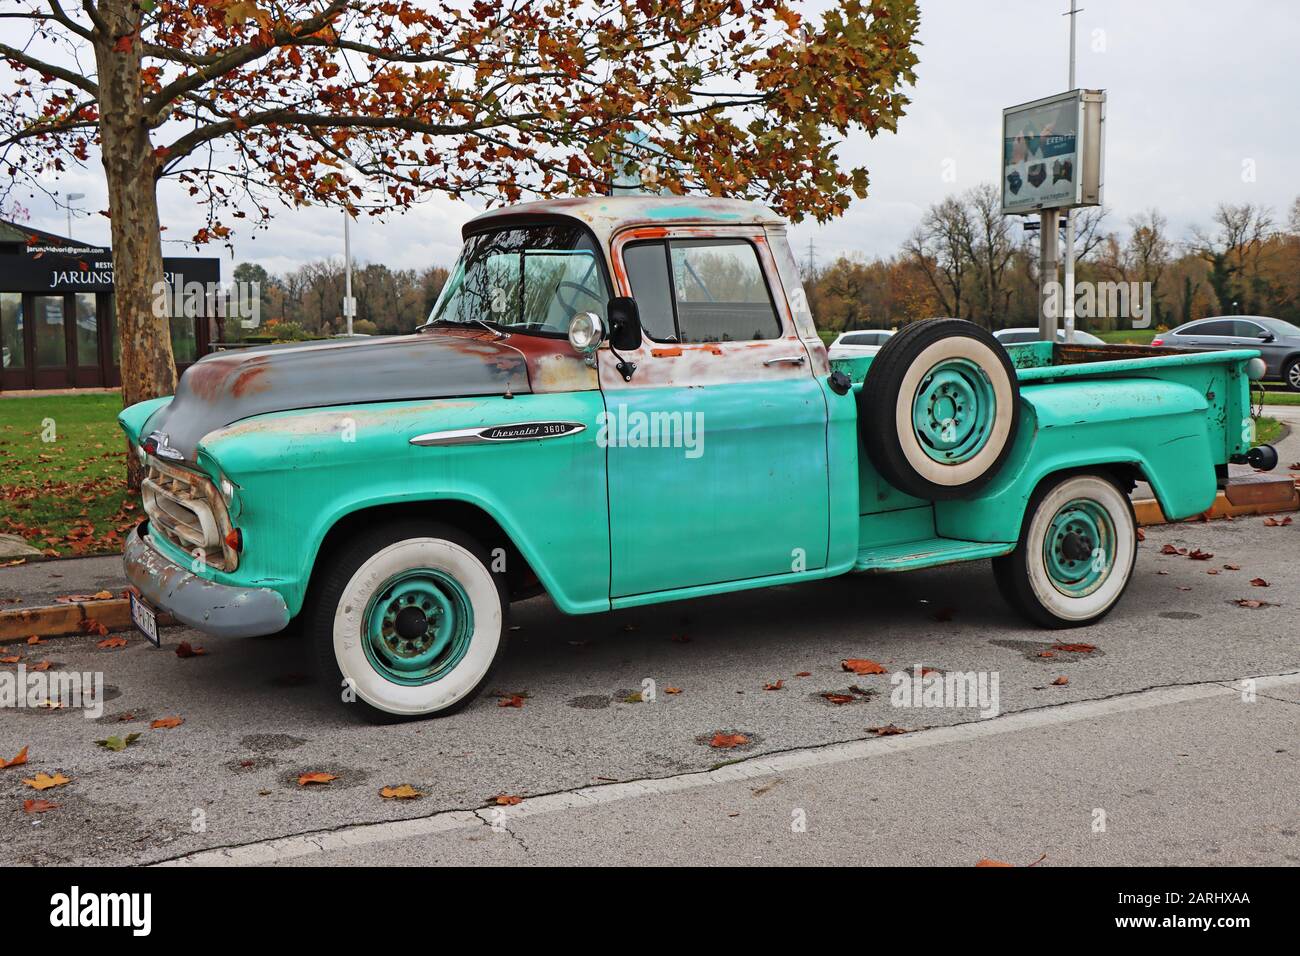 Zagreb, Croatia - 09. November  2019: Old green vintage Chevrolet 3600 pickup truck classic, on the road in Zagreb Stock Photo